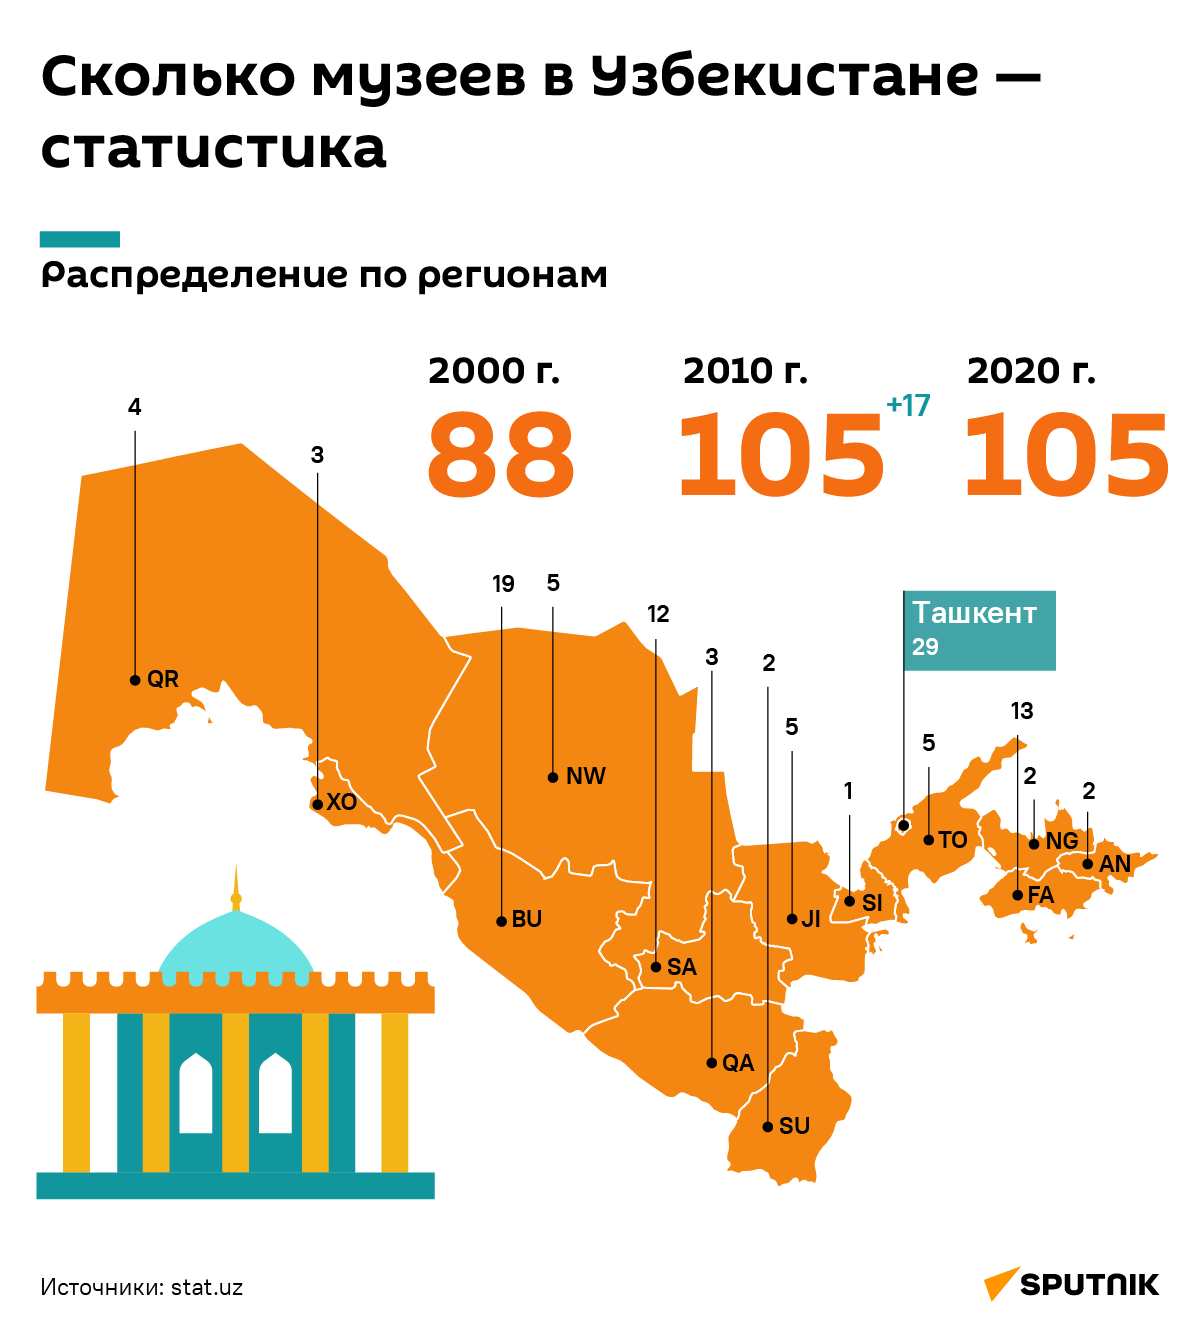 Сколько музеев в Узбекистане — статистика - Sputnik Узбекистан